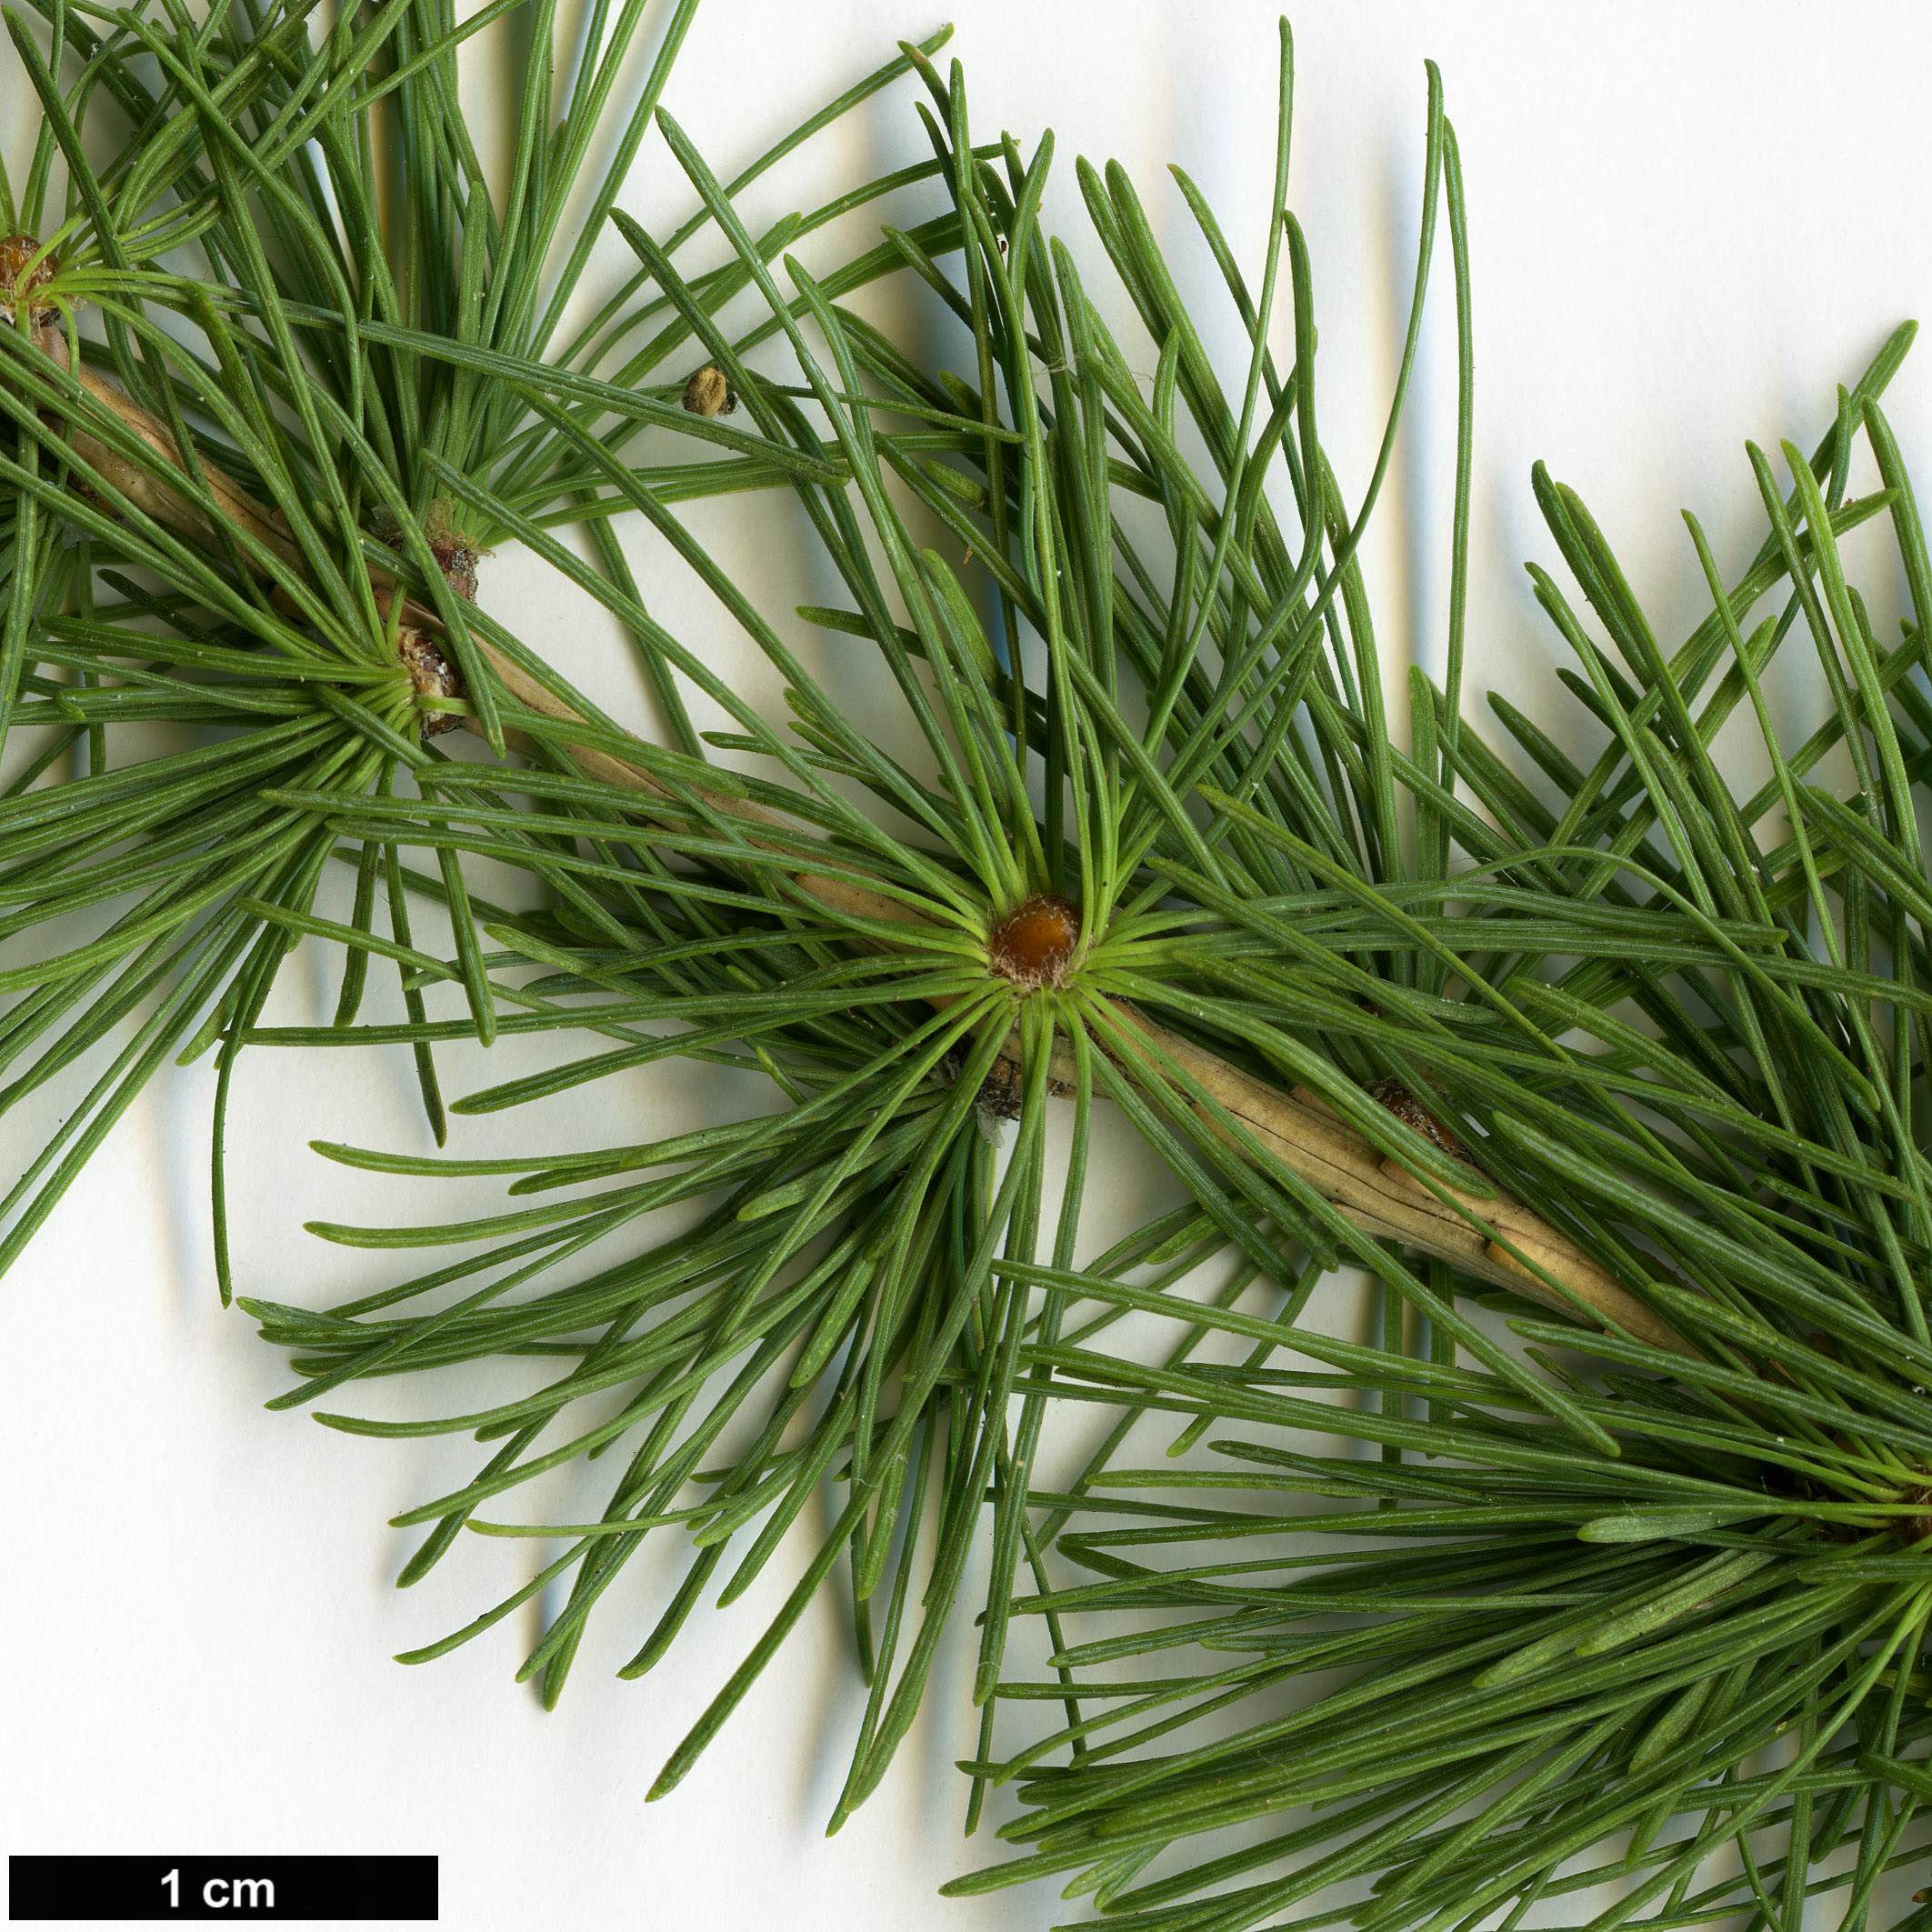 High resolution image: Family: Pinaceae - Genus: Larix - Taxon: decidua